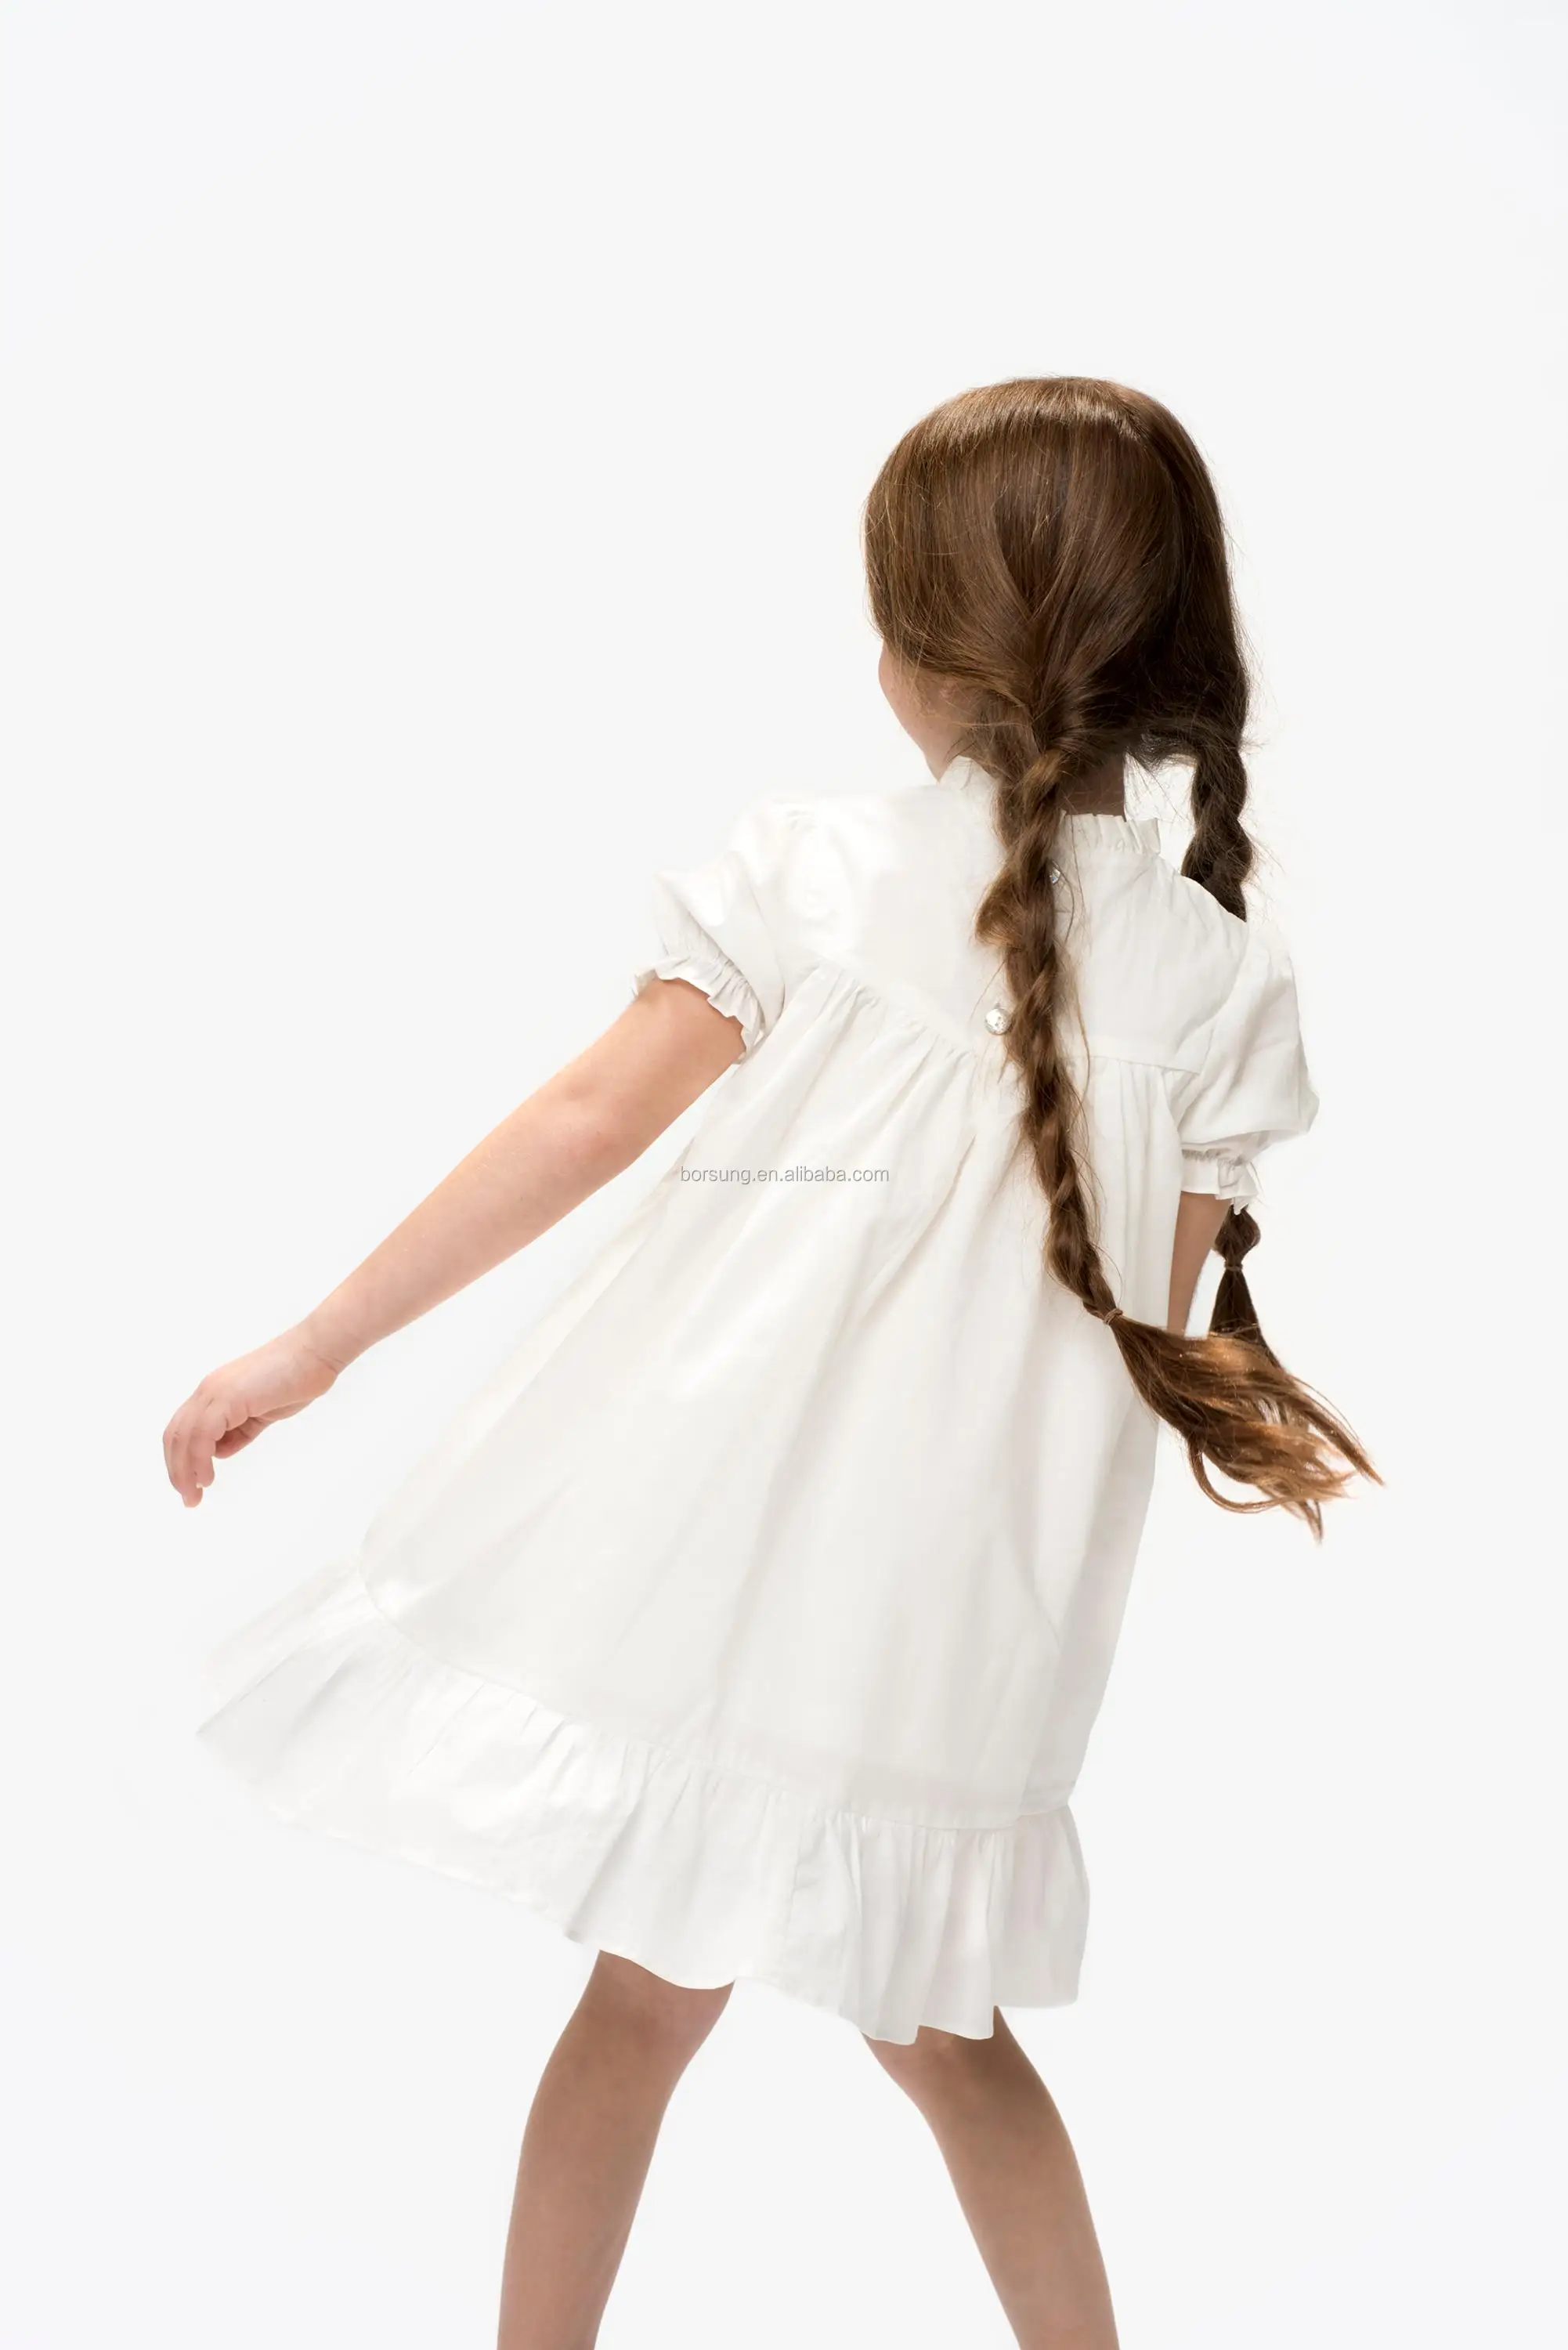 plain white summer dress